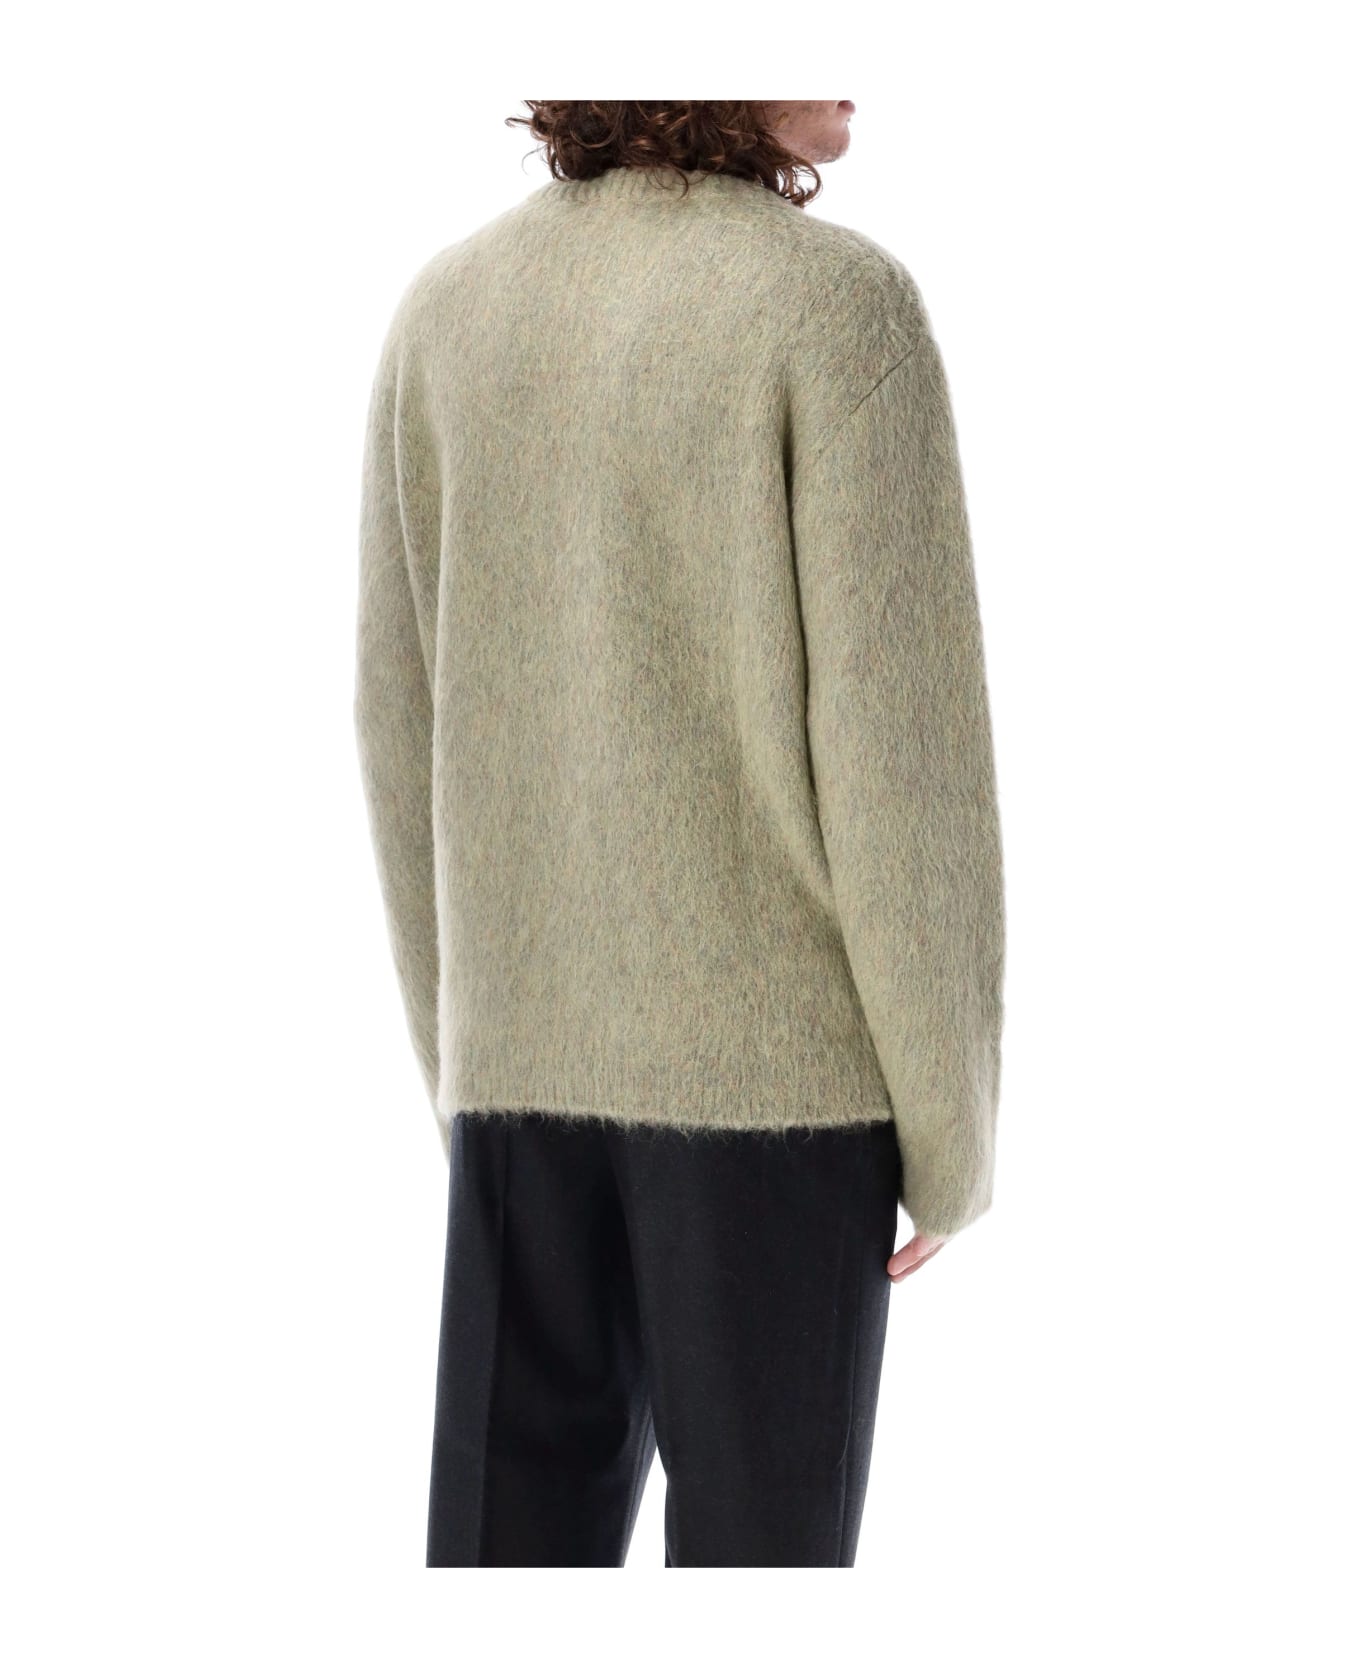 Lemaire Brushed Sweater - GREY ニットウェア